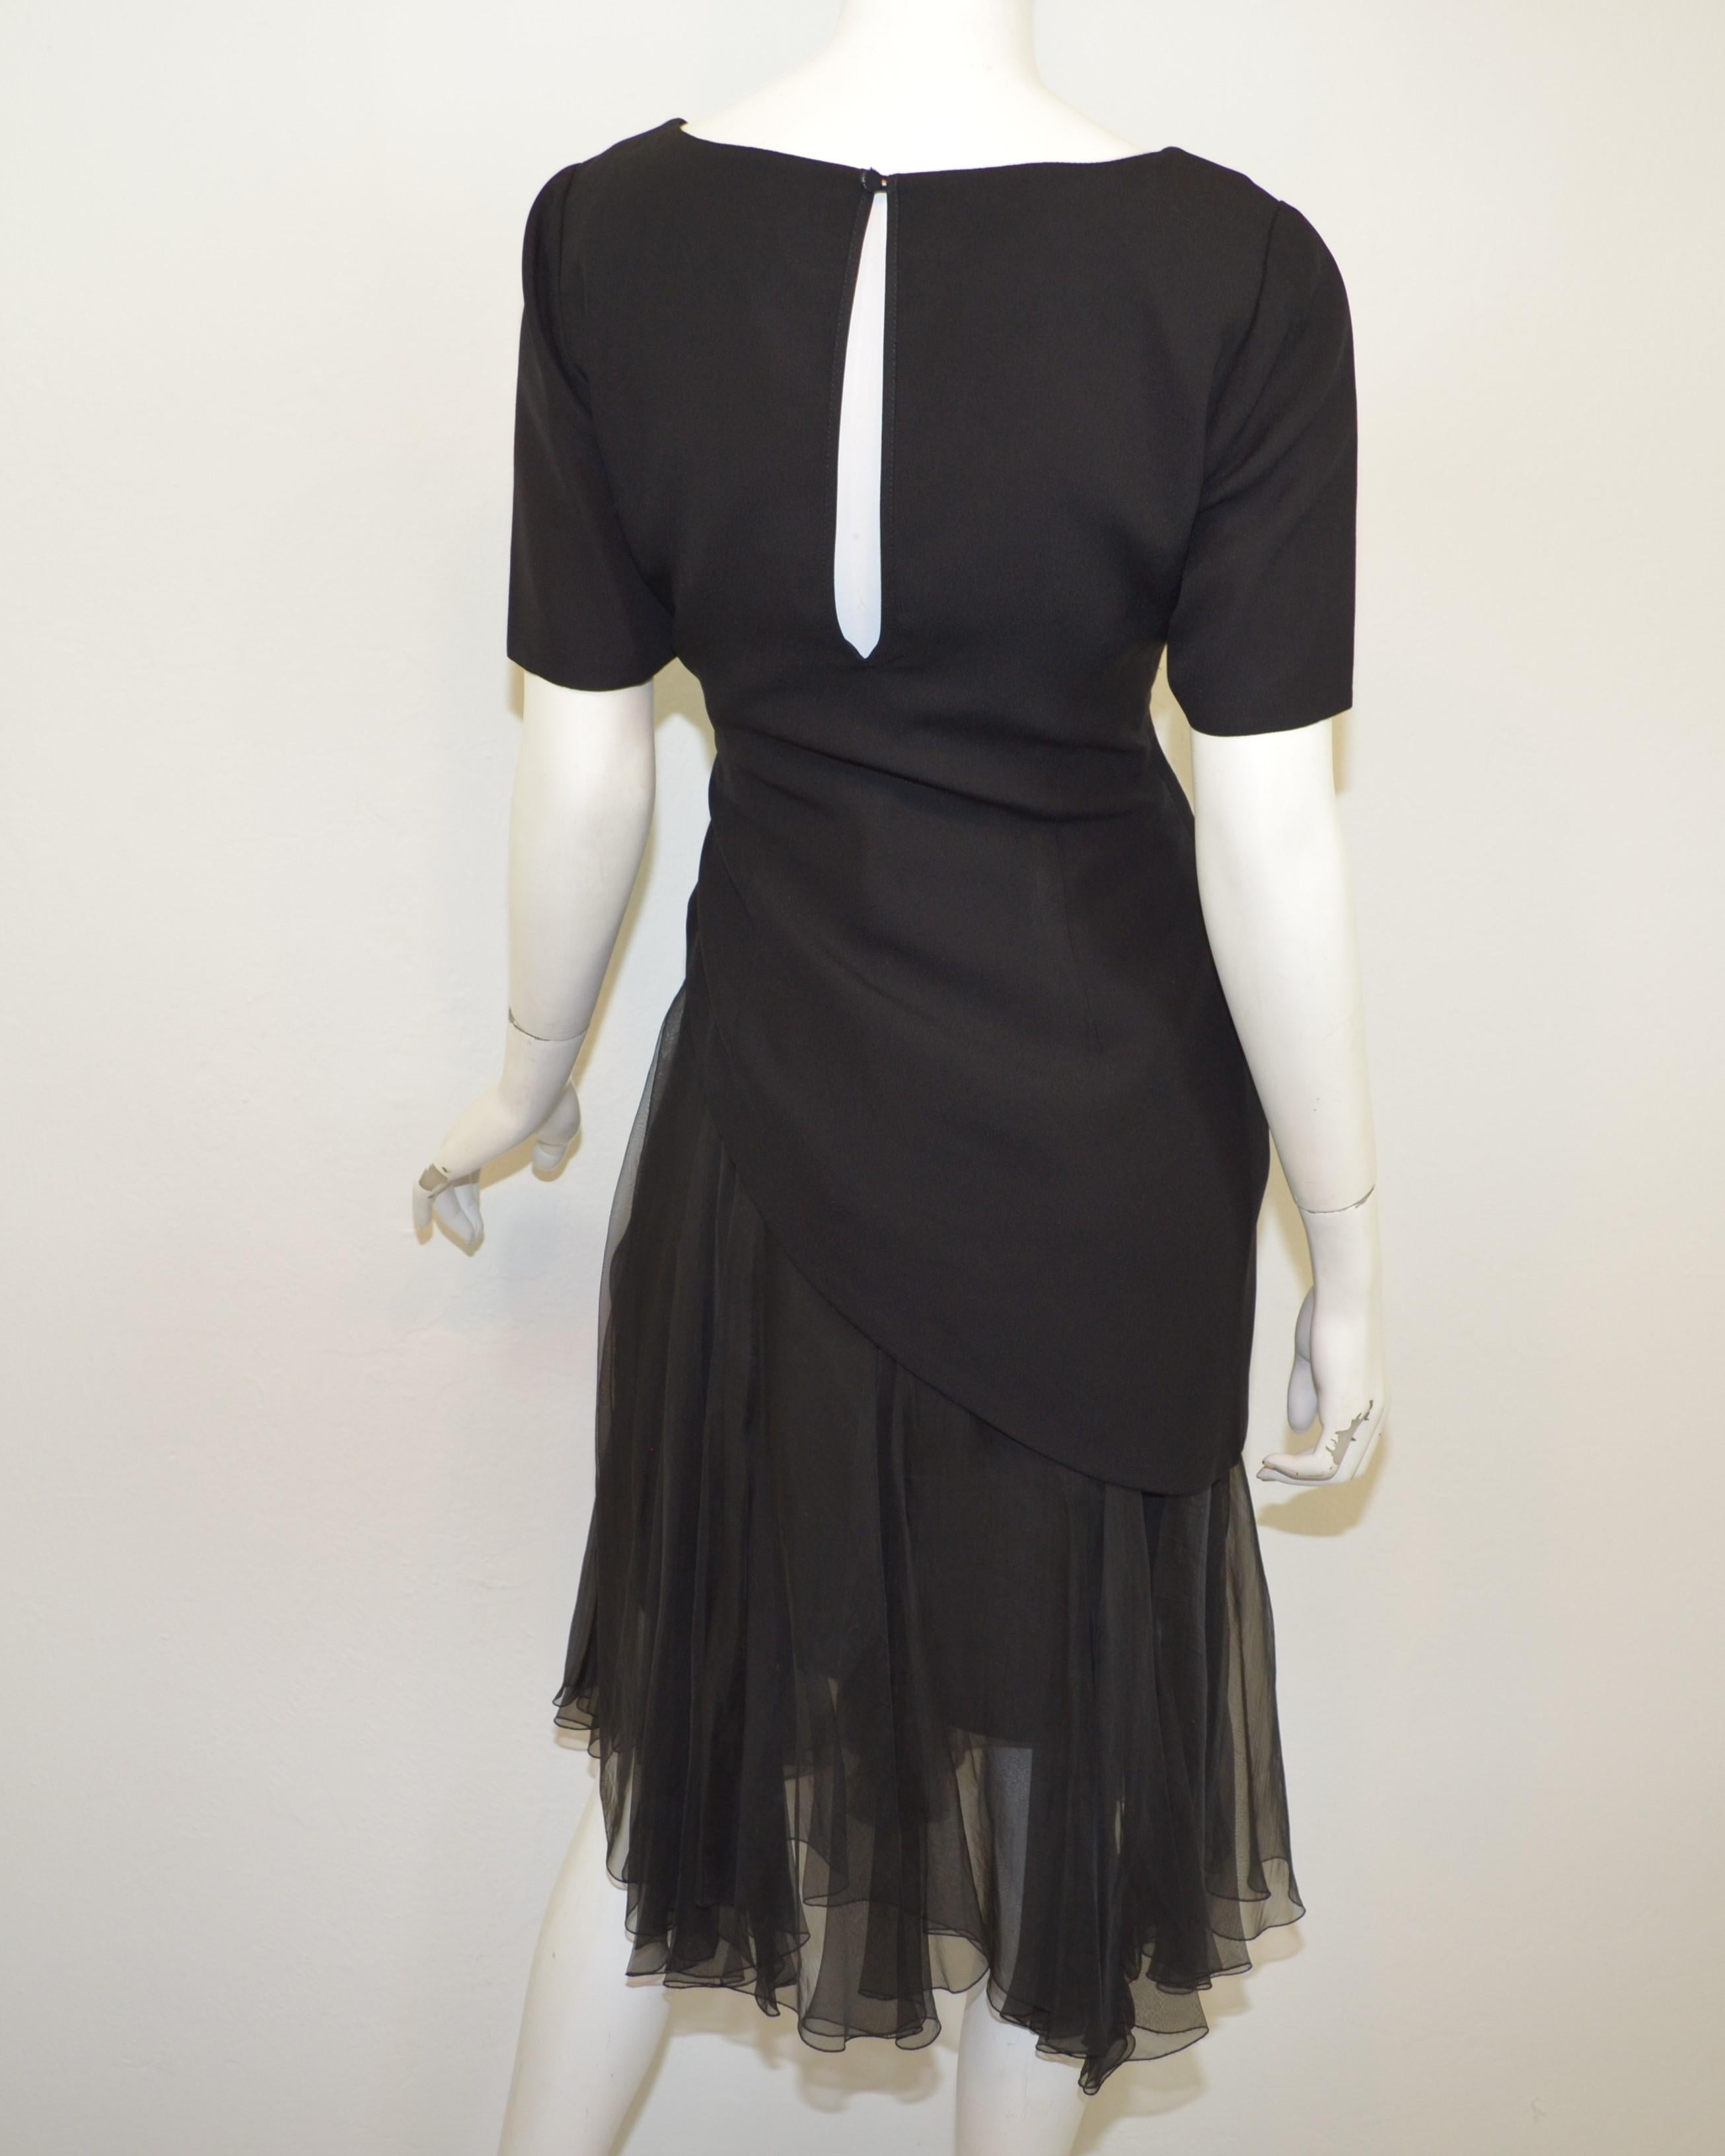 Fin des années 1980, Christian Dior Boutique jupe en mousseline de soie avec corsage asymétrique séparé en crêpe noir. L'ensemble possède une étiquette numérotée et une étiquette manuscrite identifiant la collection comme 41C. Fabriqué en